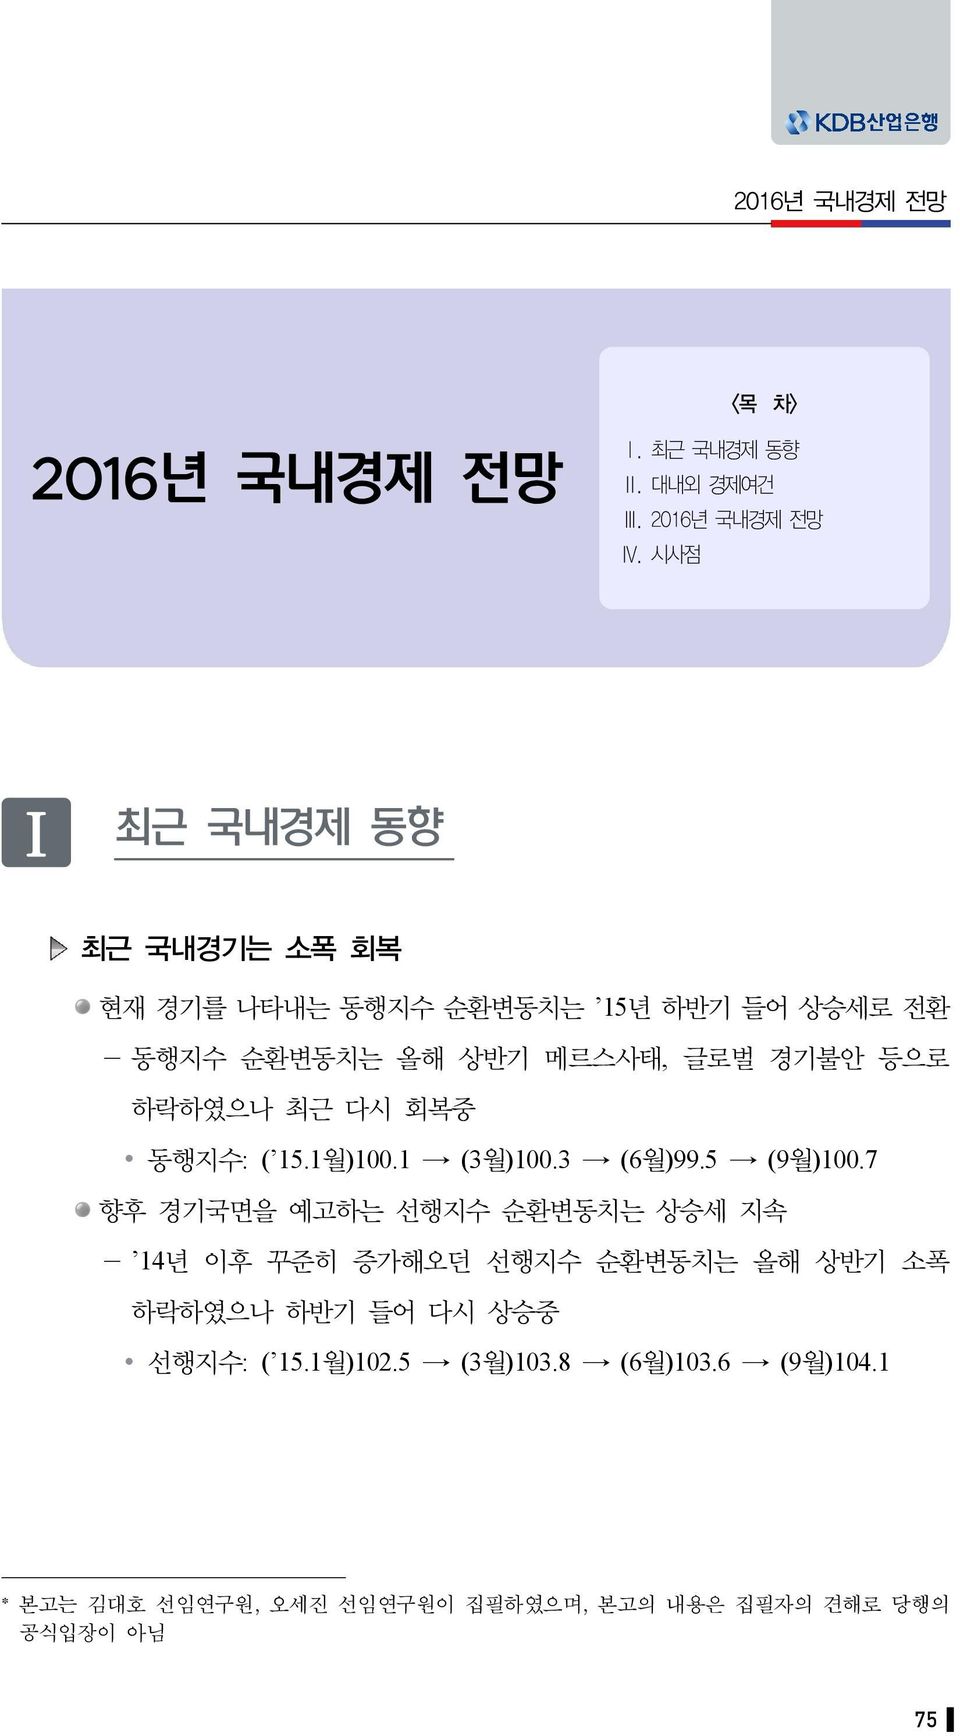 하락하였으나 최근 다시 회복중 동행지수: ( 15.1월)100.1 (3월)100.3 (6월)99.5 (9월)100.